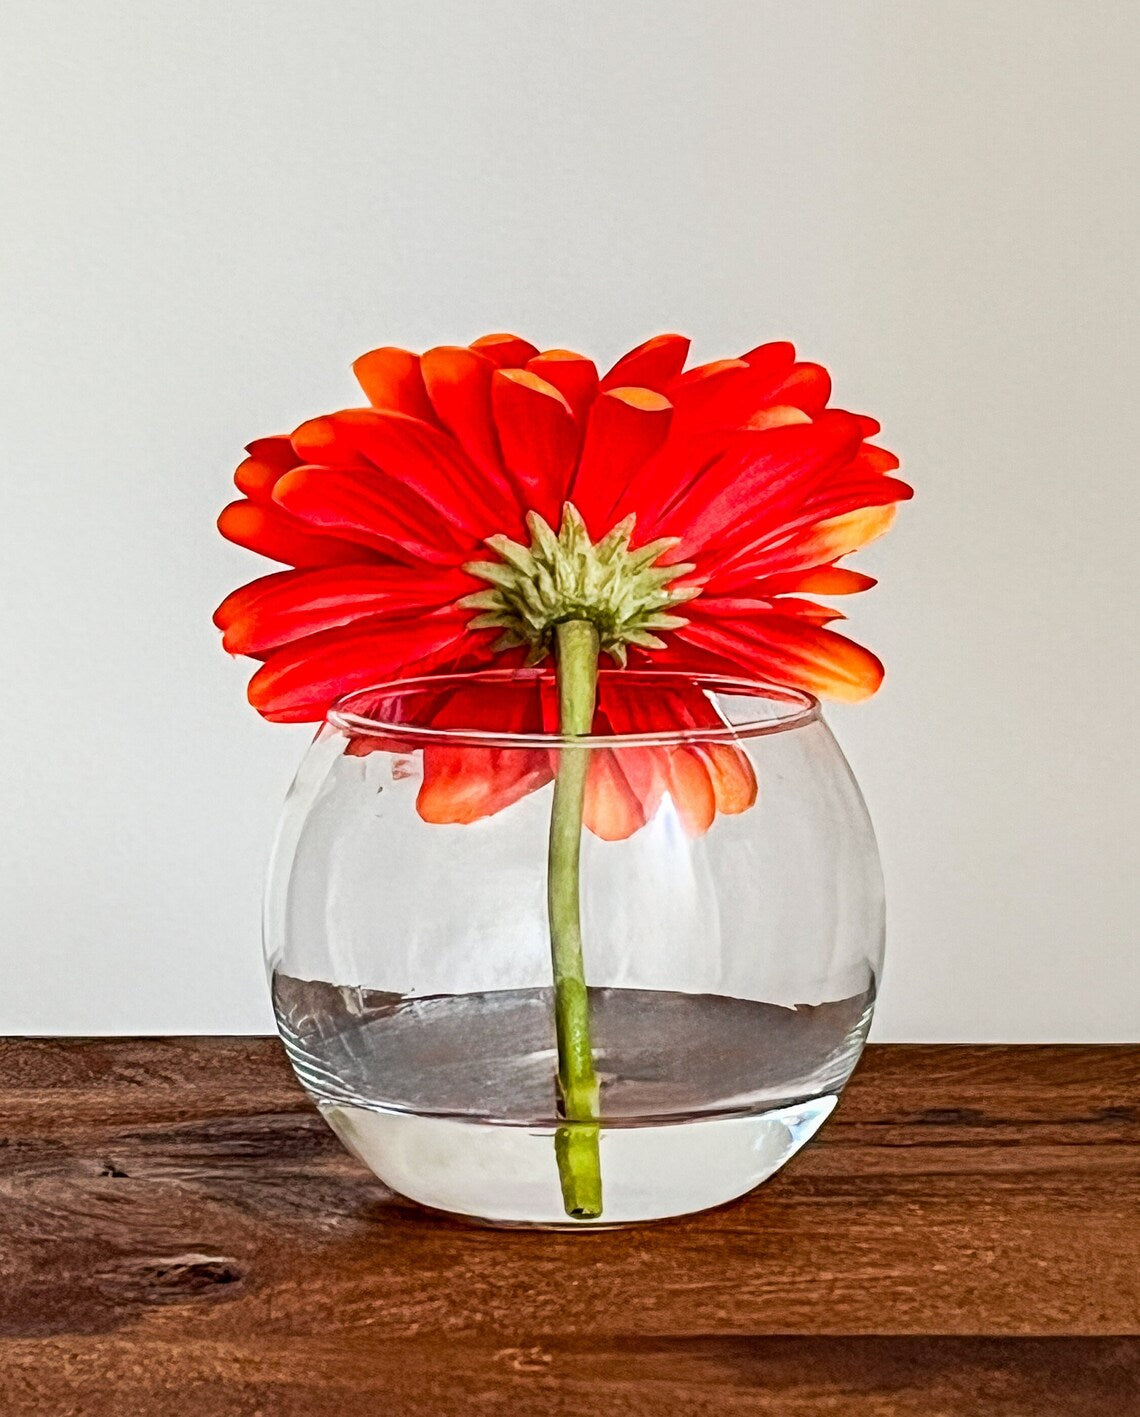 Daisy Flower Popper In Glass Vase